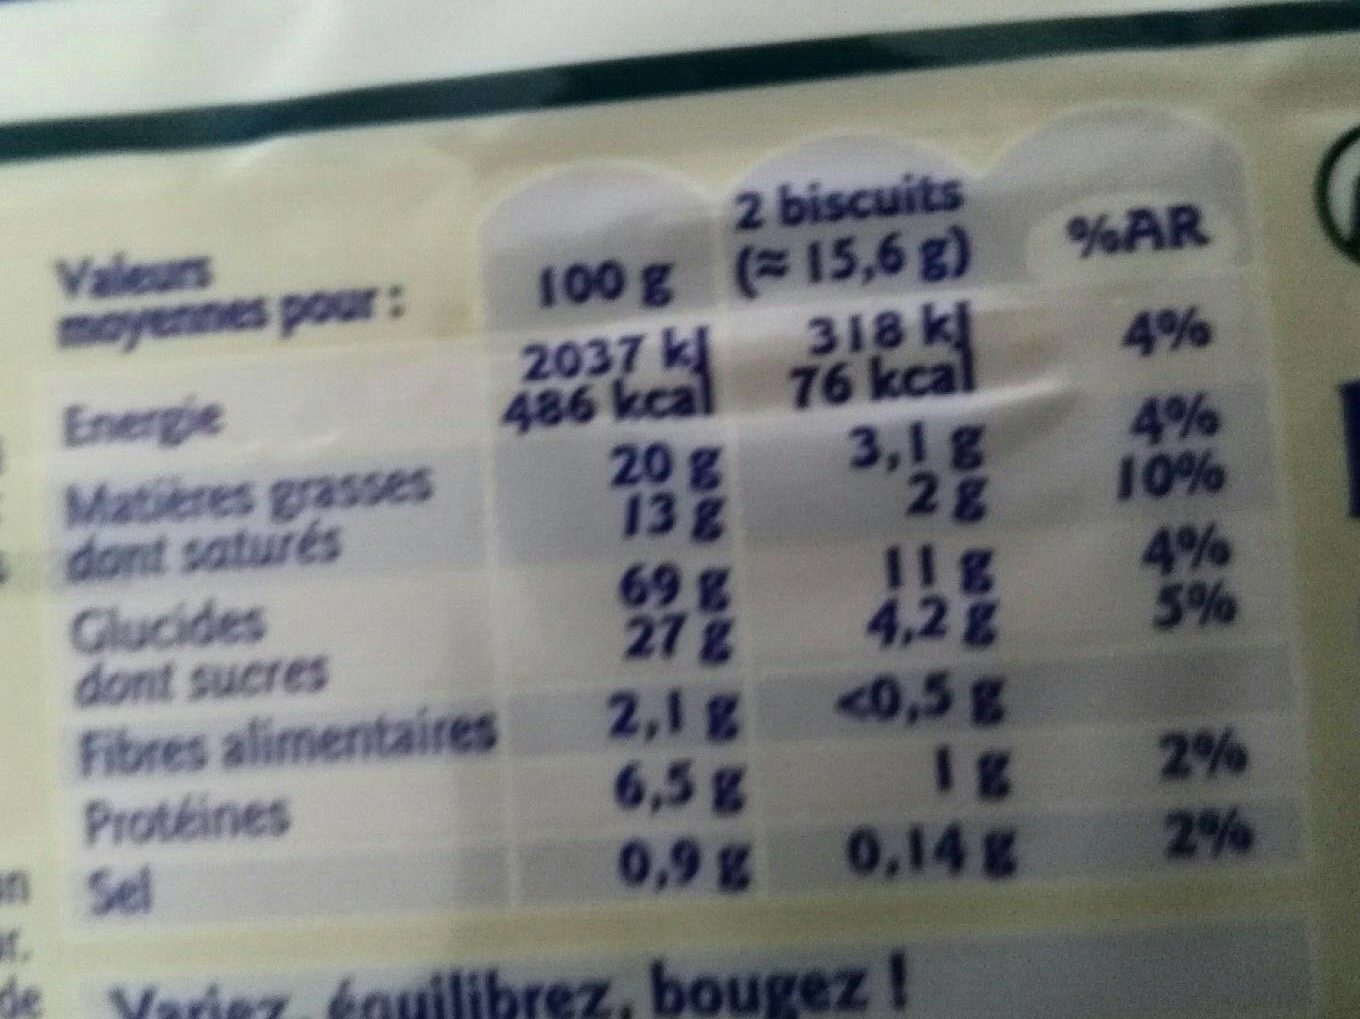 Galettes bretonnes pur beurre - Nutrition facts - fr